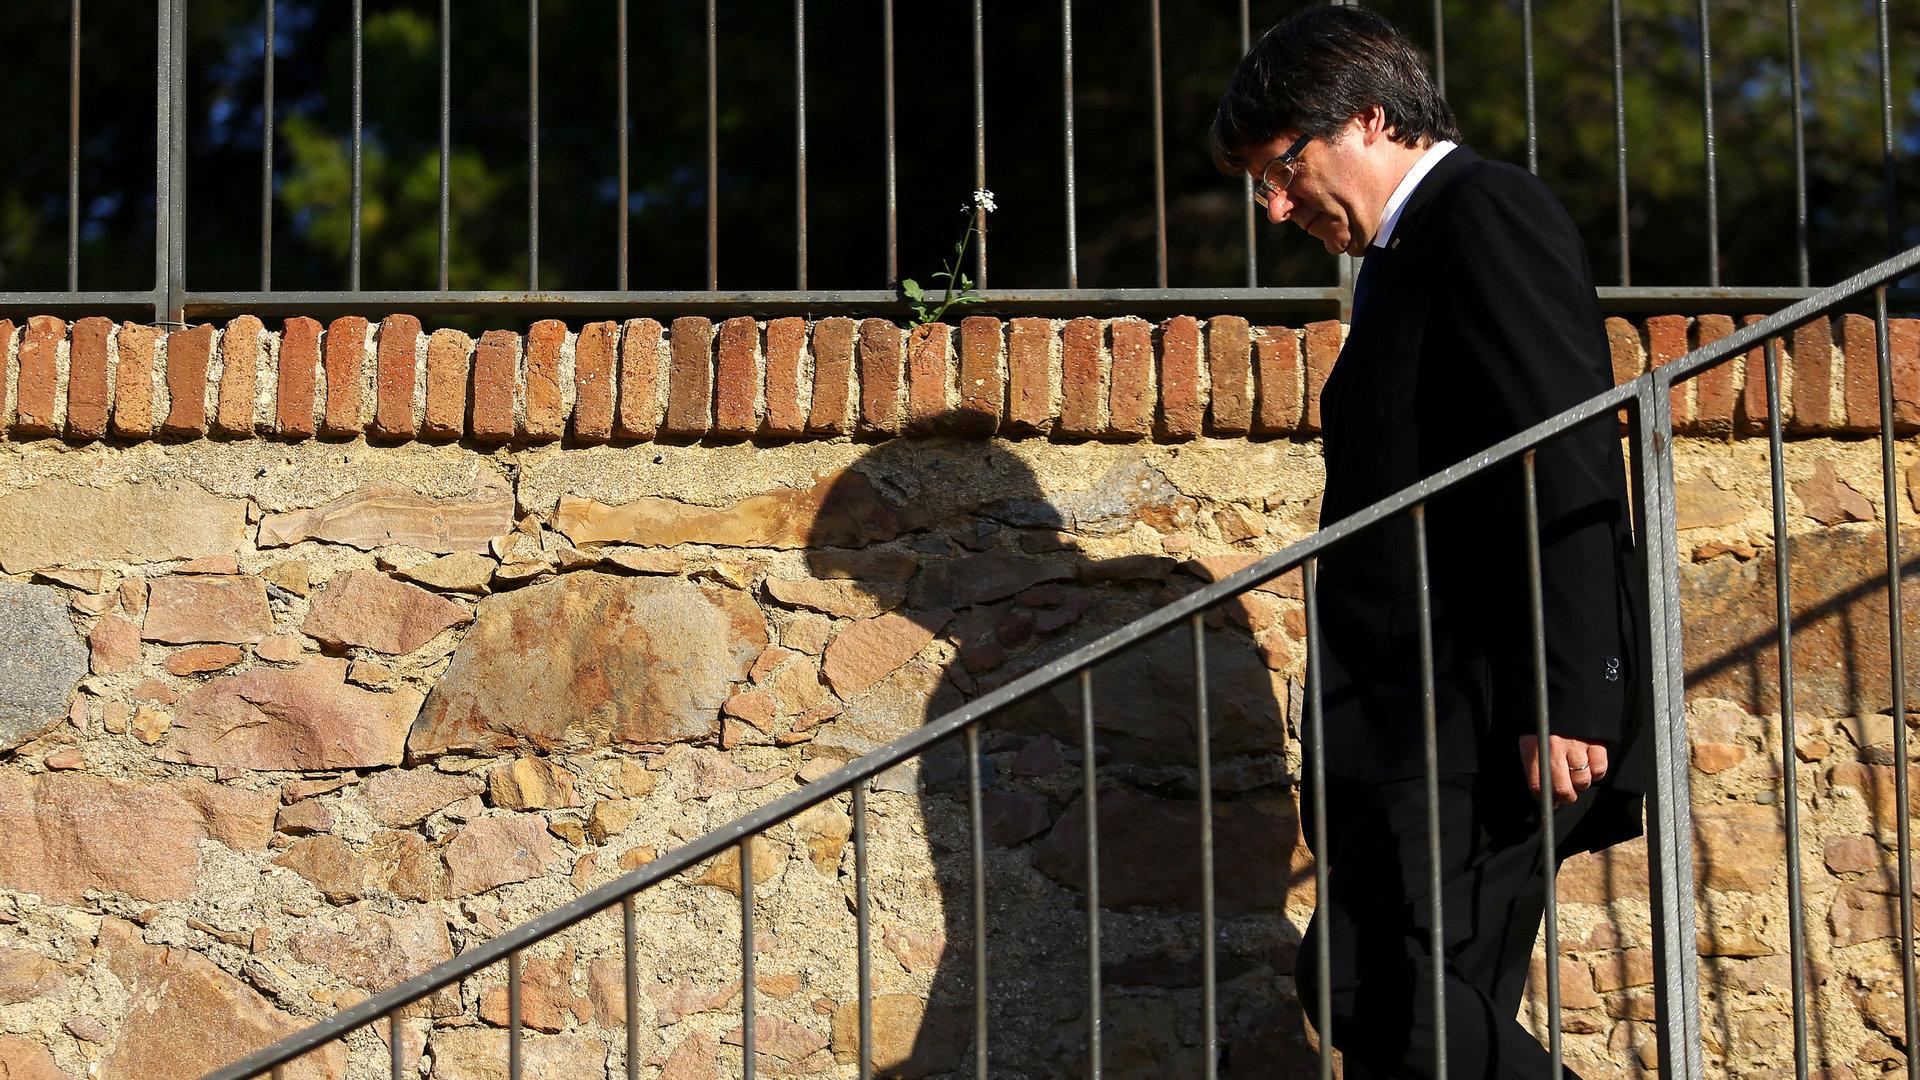 Auflagen erfüllt: Puigdemont vor Freilassung